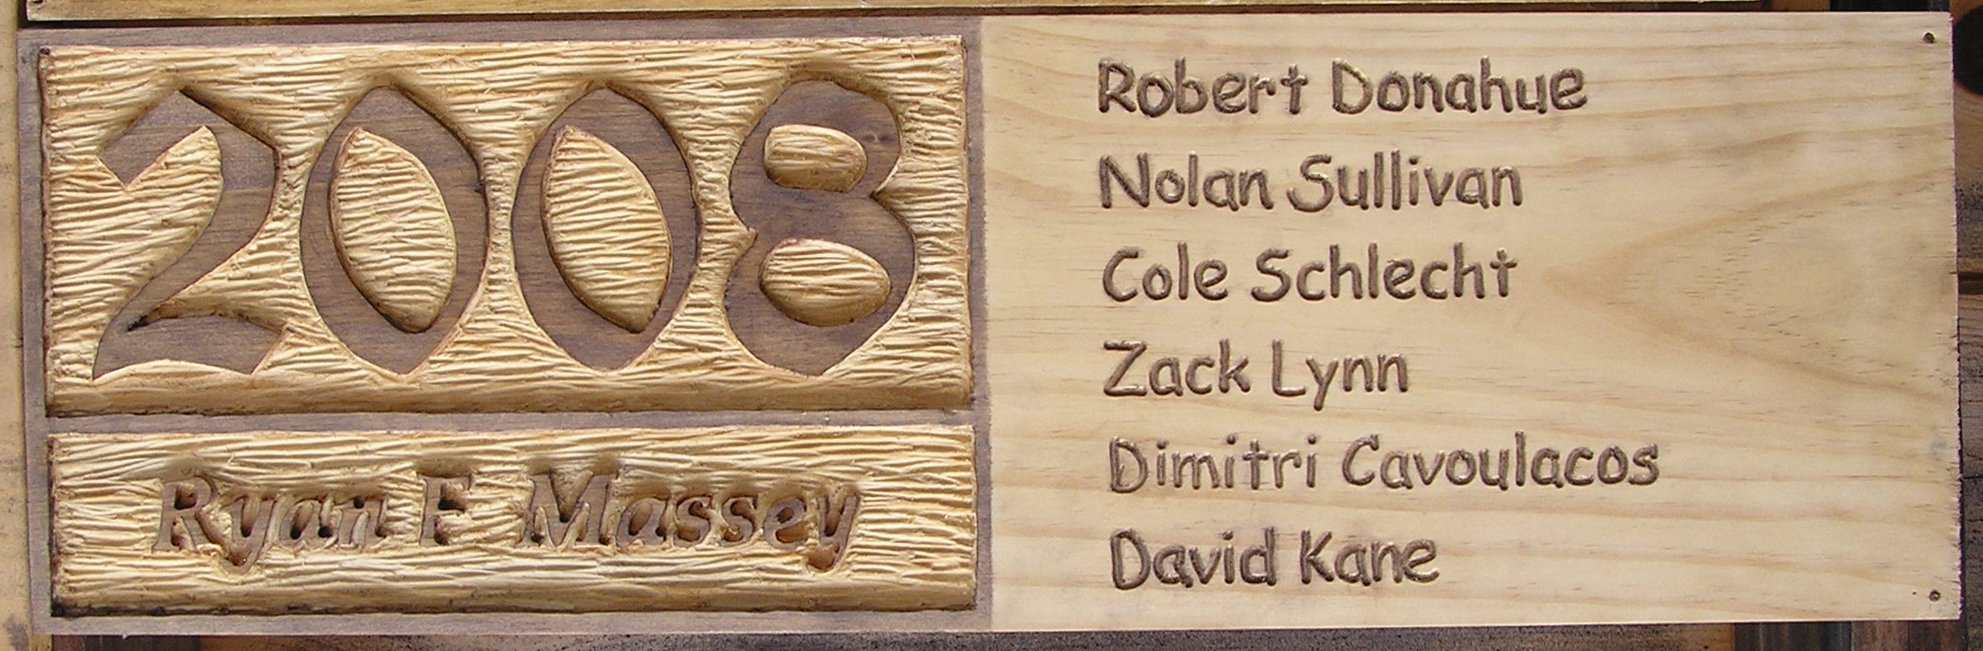 The 2008 CIT plaques